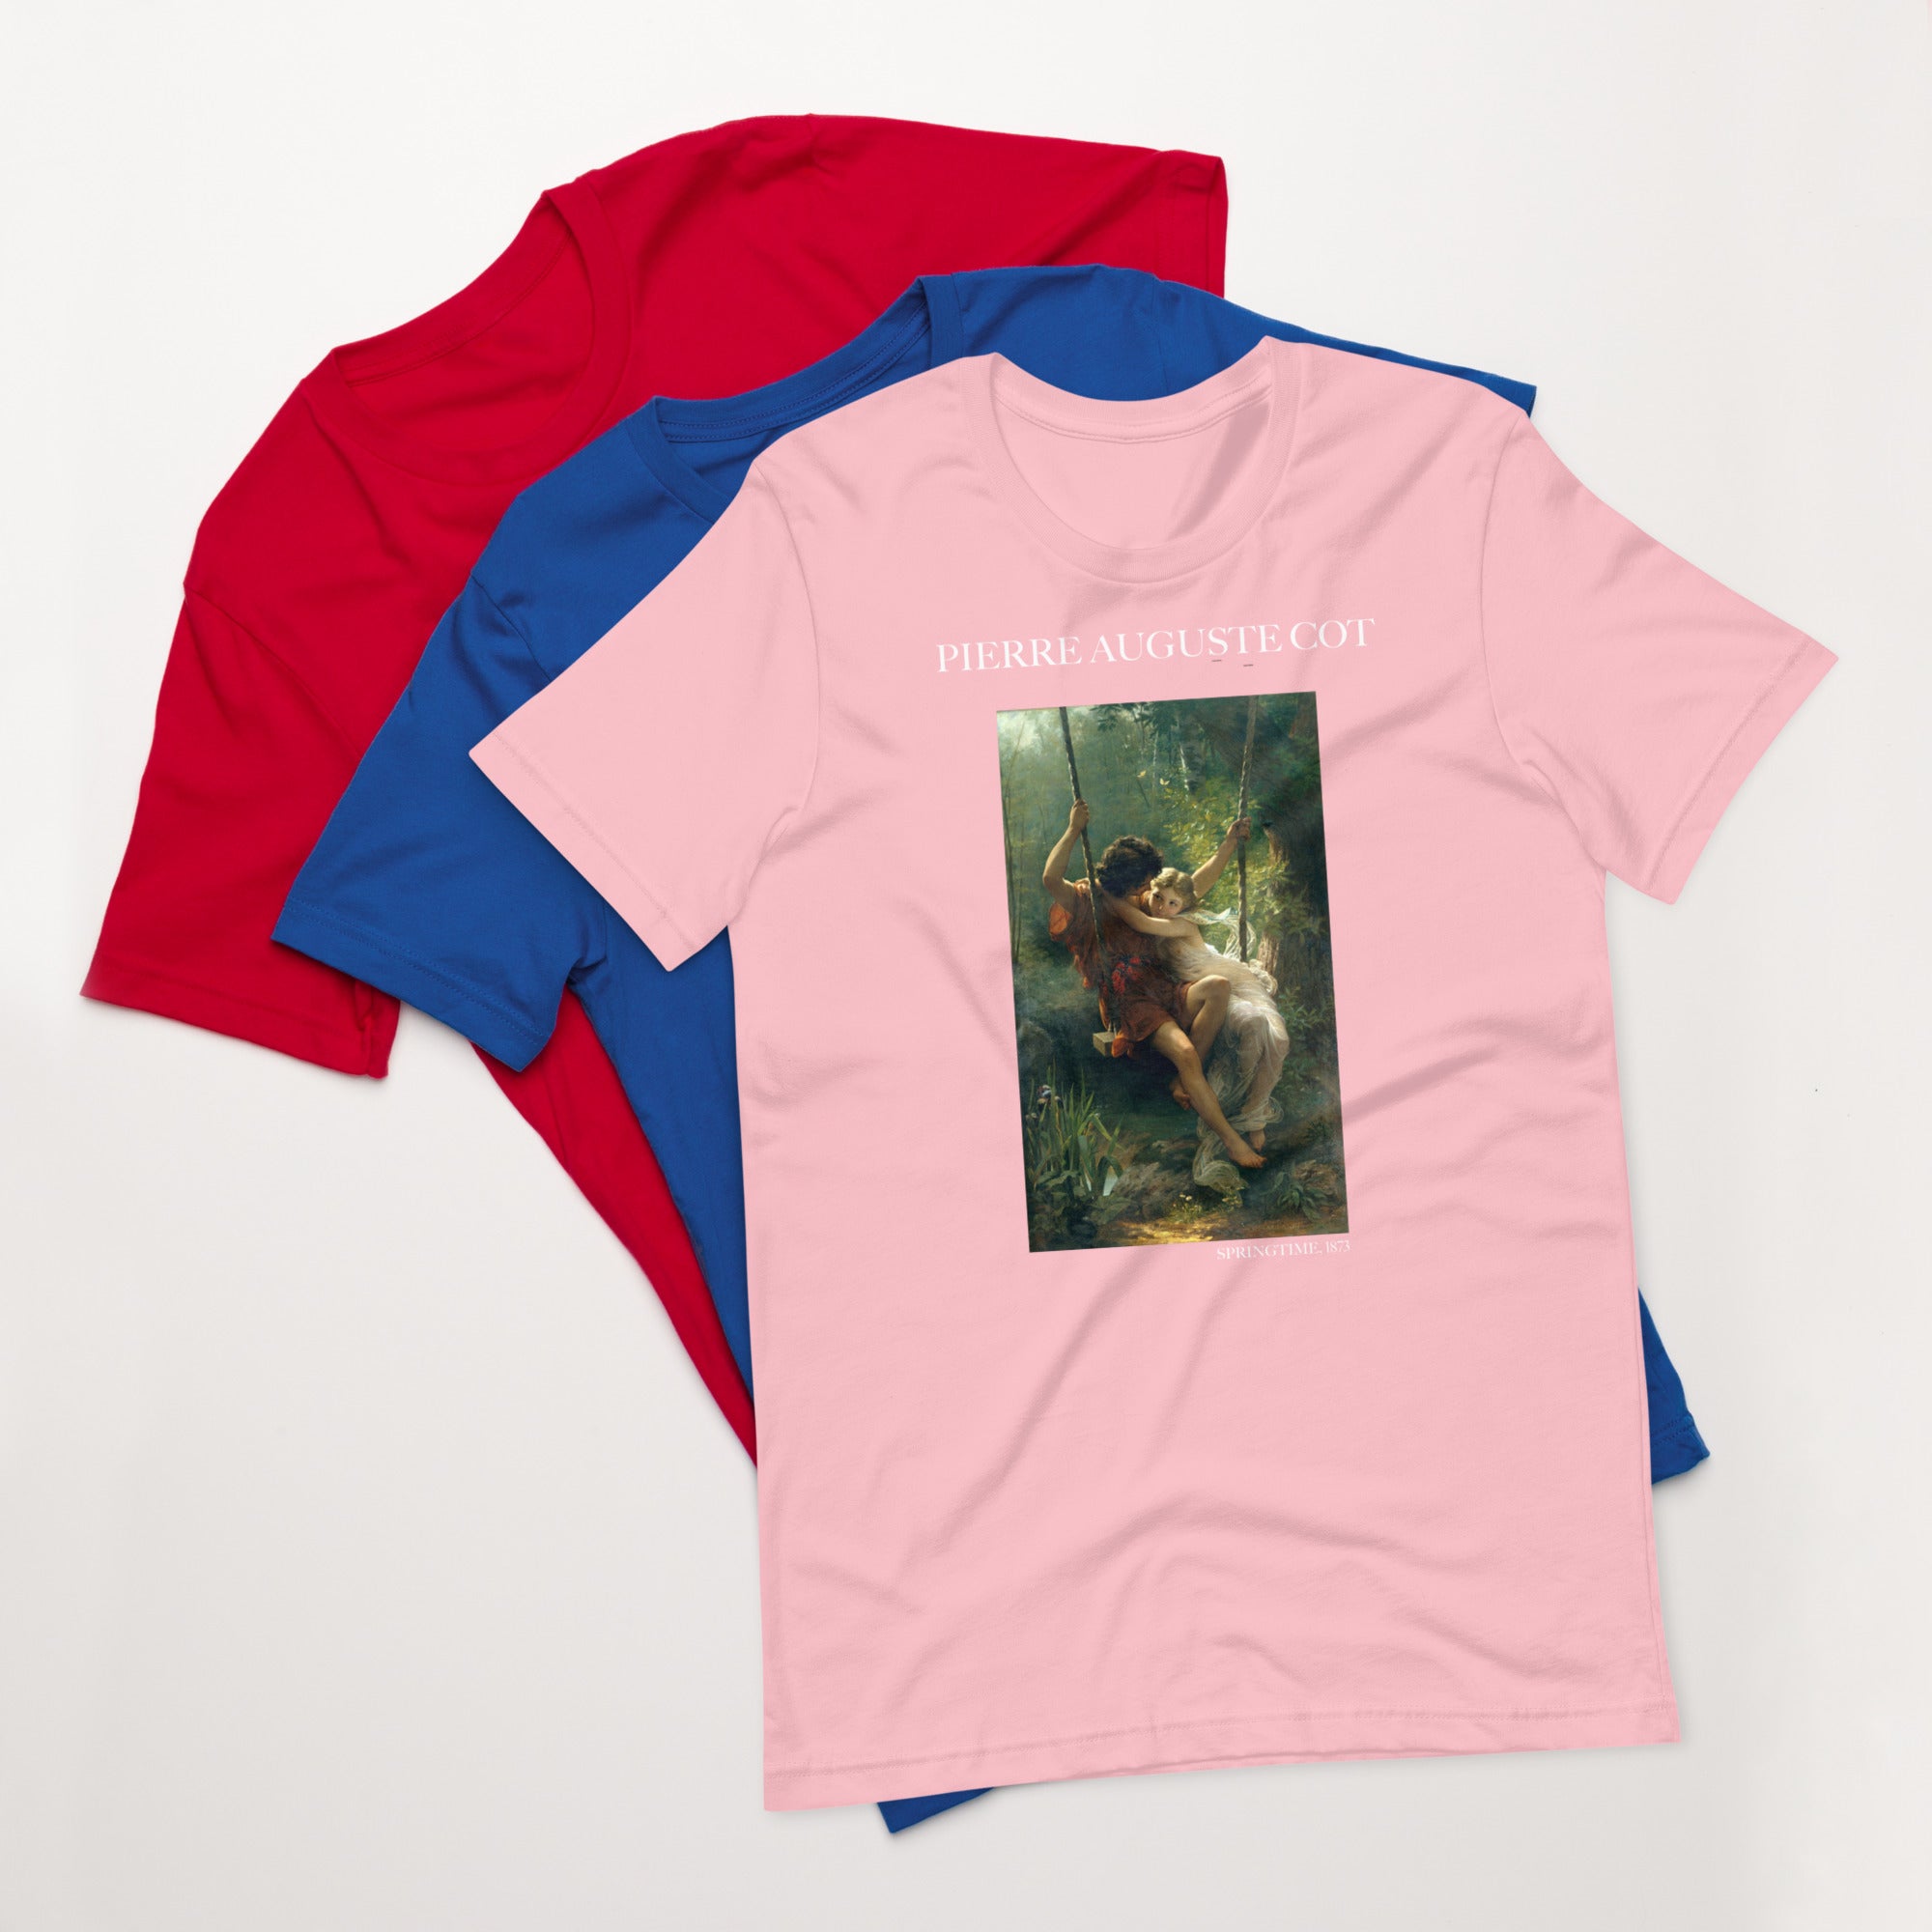 Pierre Auguste Cot 'Springtime' Famous Painting T-Shirt | Unisex Classic Art Tee